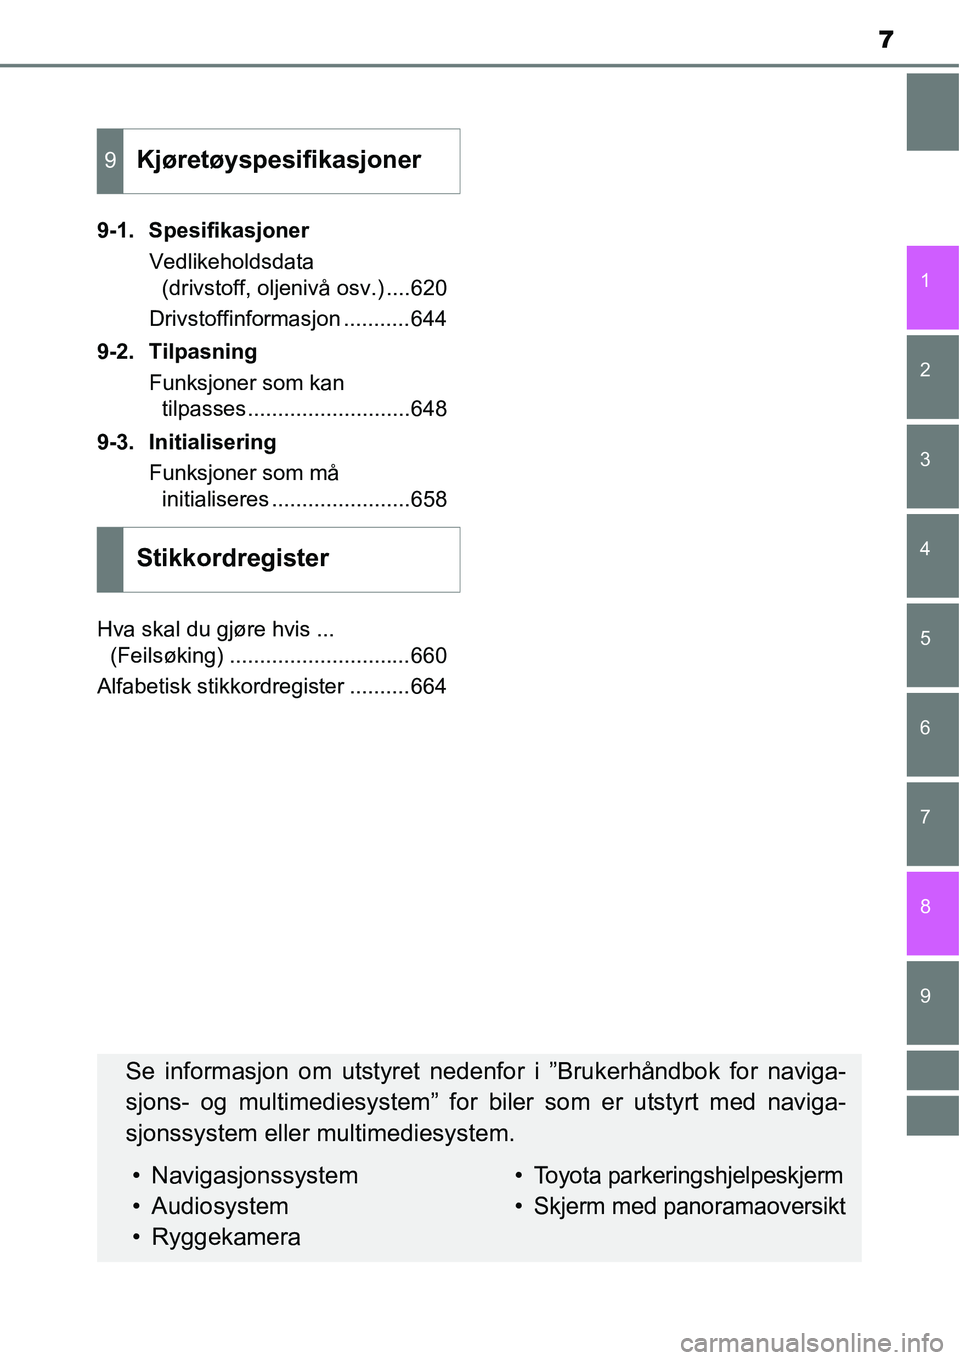 TOYOTA RAV4 2016  Instruksjoner for bruk (in Norwegian) 9 8
7
1
7 6
5
4
3
2
9-1. Spesifikasjoner
Vedlikeholdsdata 
(drivstoff, oljenivå osv.) ....620
Drivstoffinformasjon ...........644
9-2. Tilpasning
Funksjoner som kan 
tilpasses........................